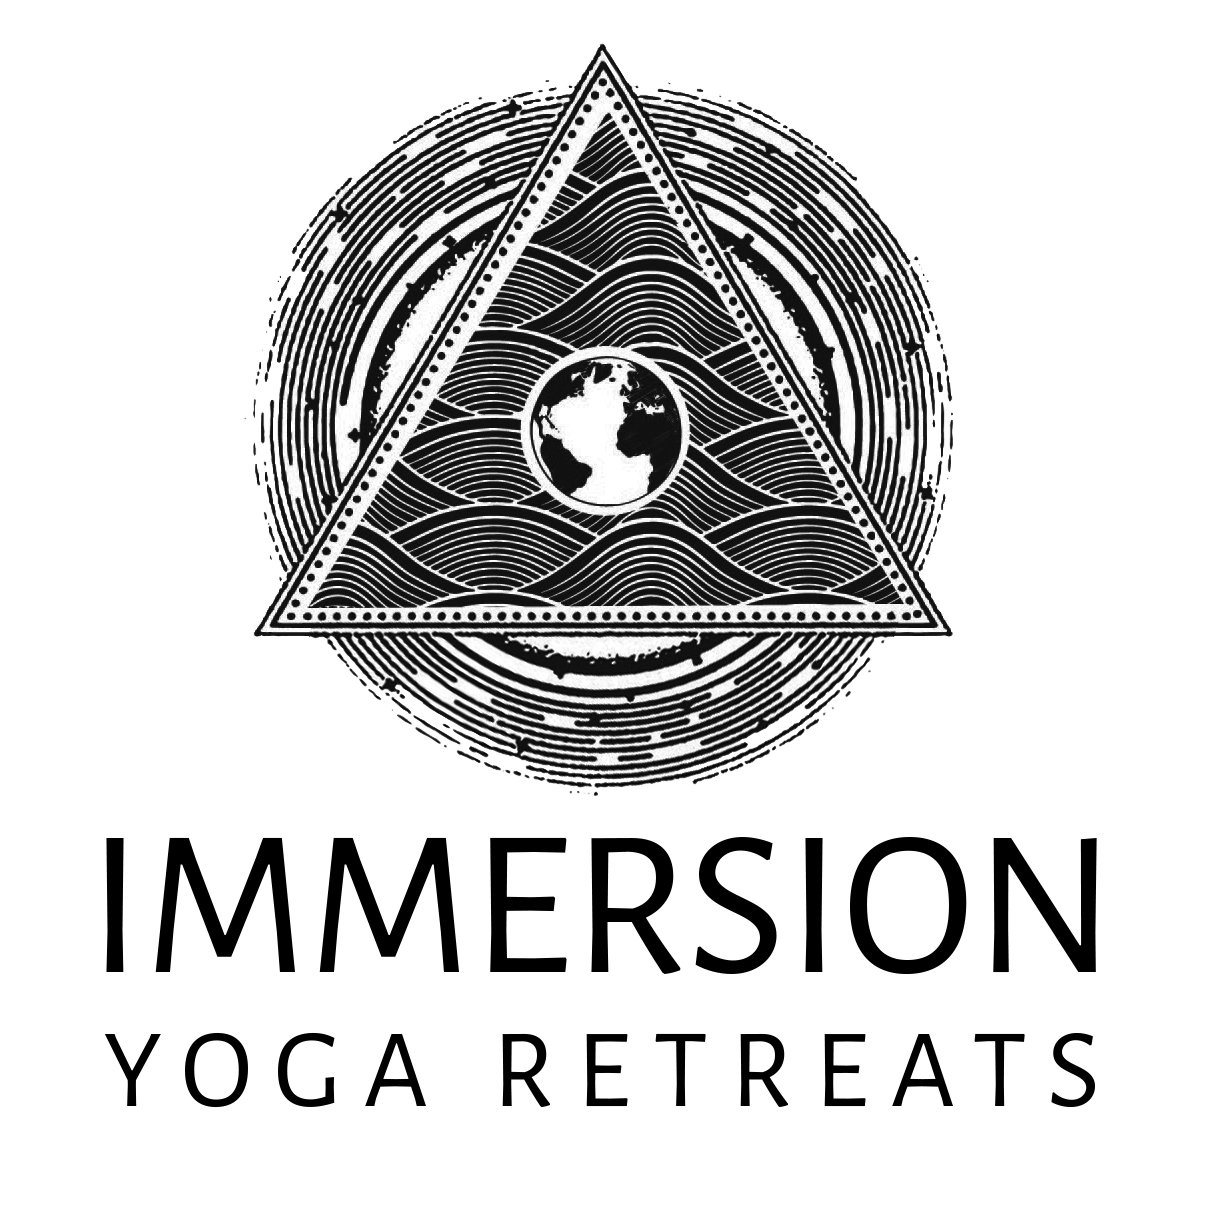 Immersion Yoga Retreats - yoga retreats in pristine wilderness